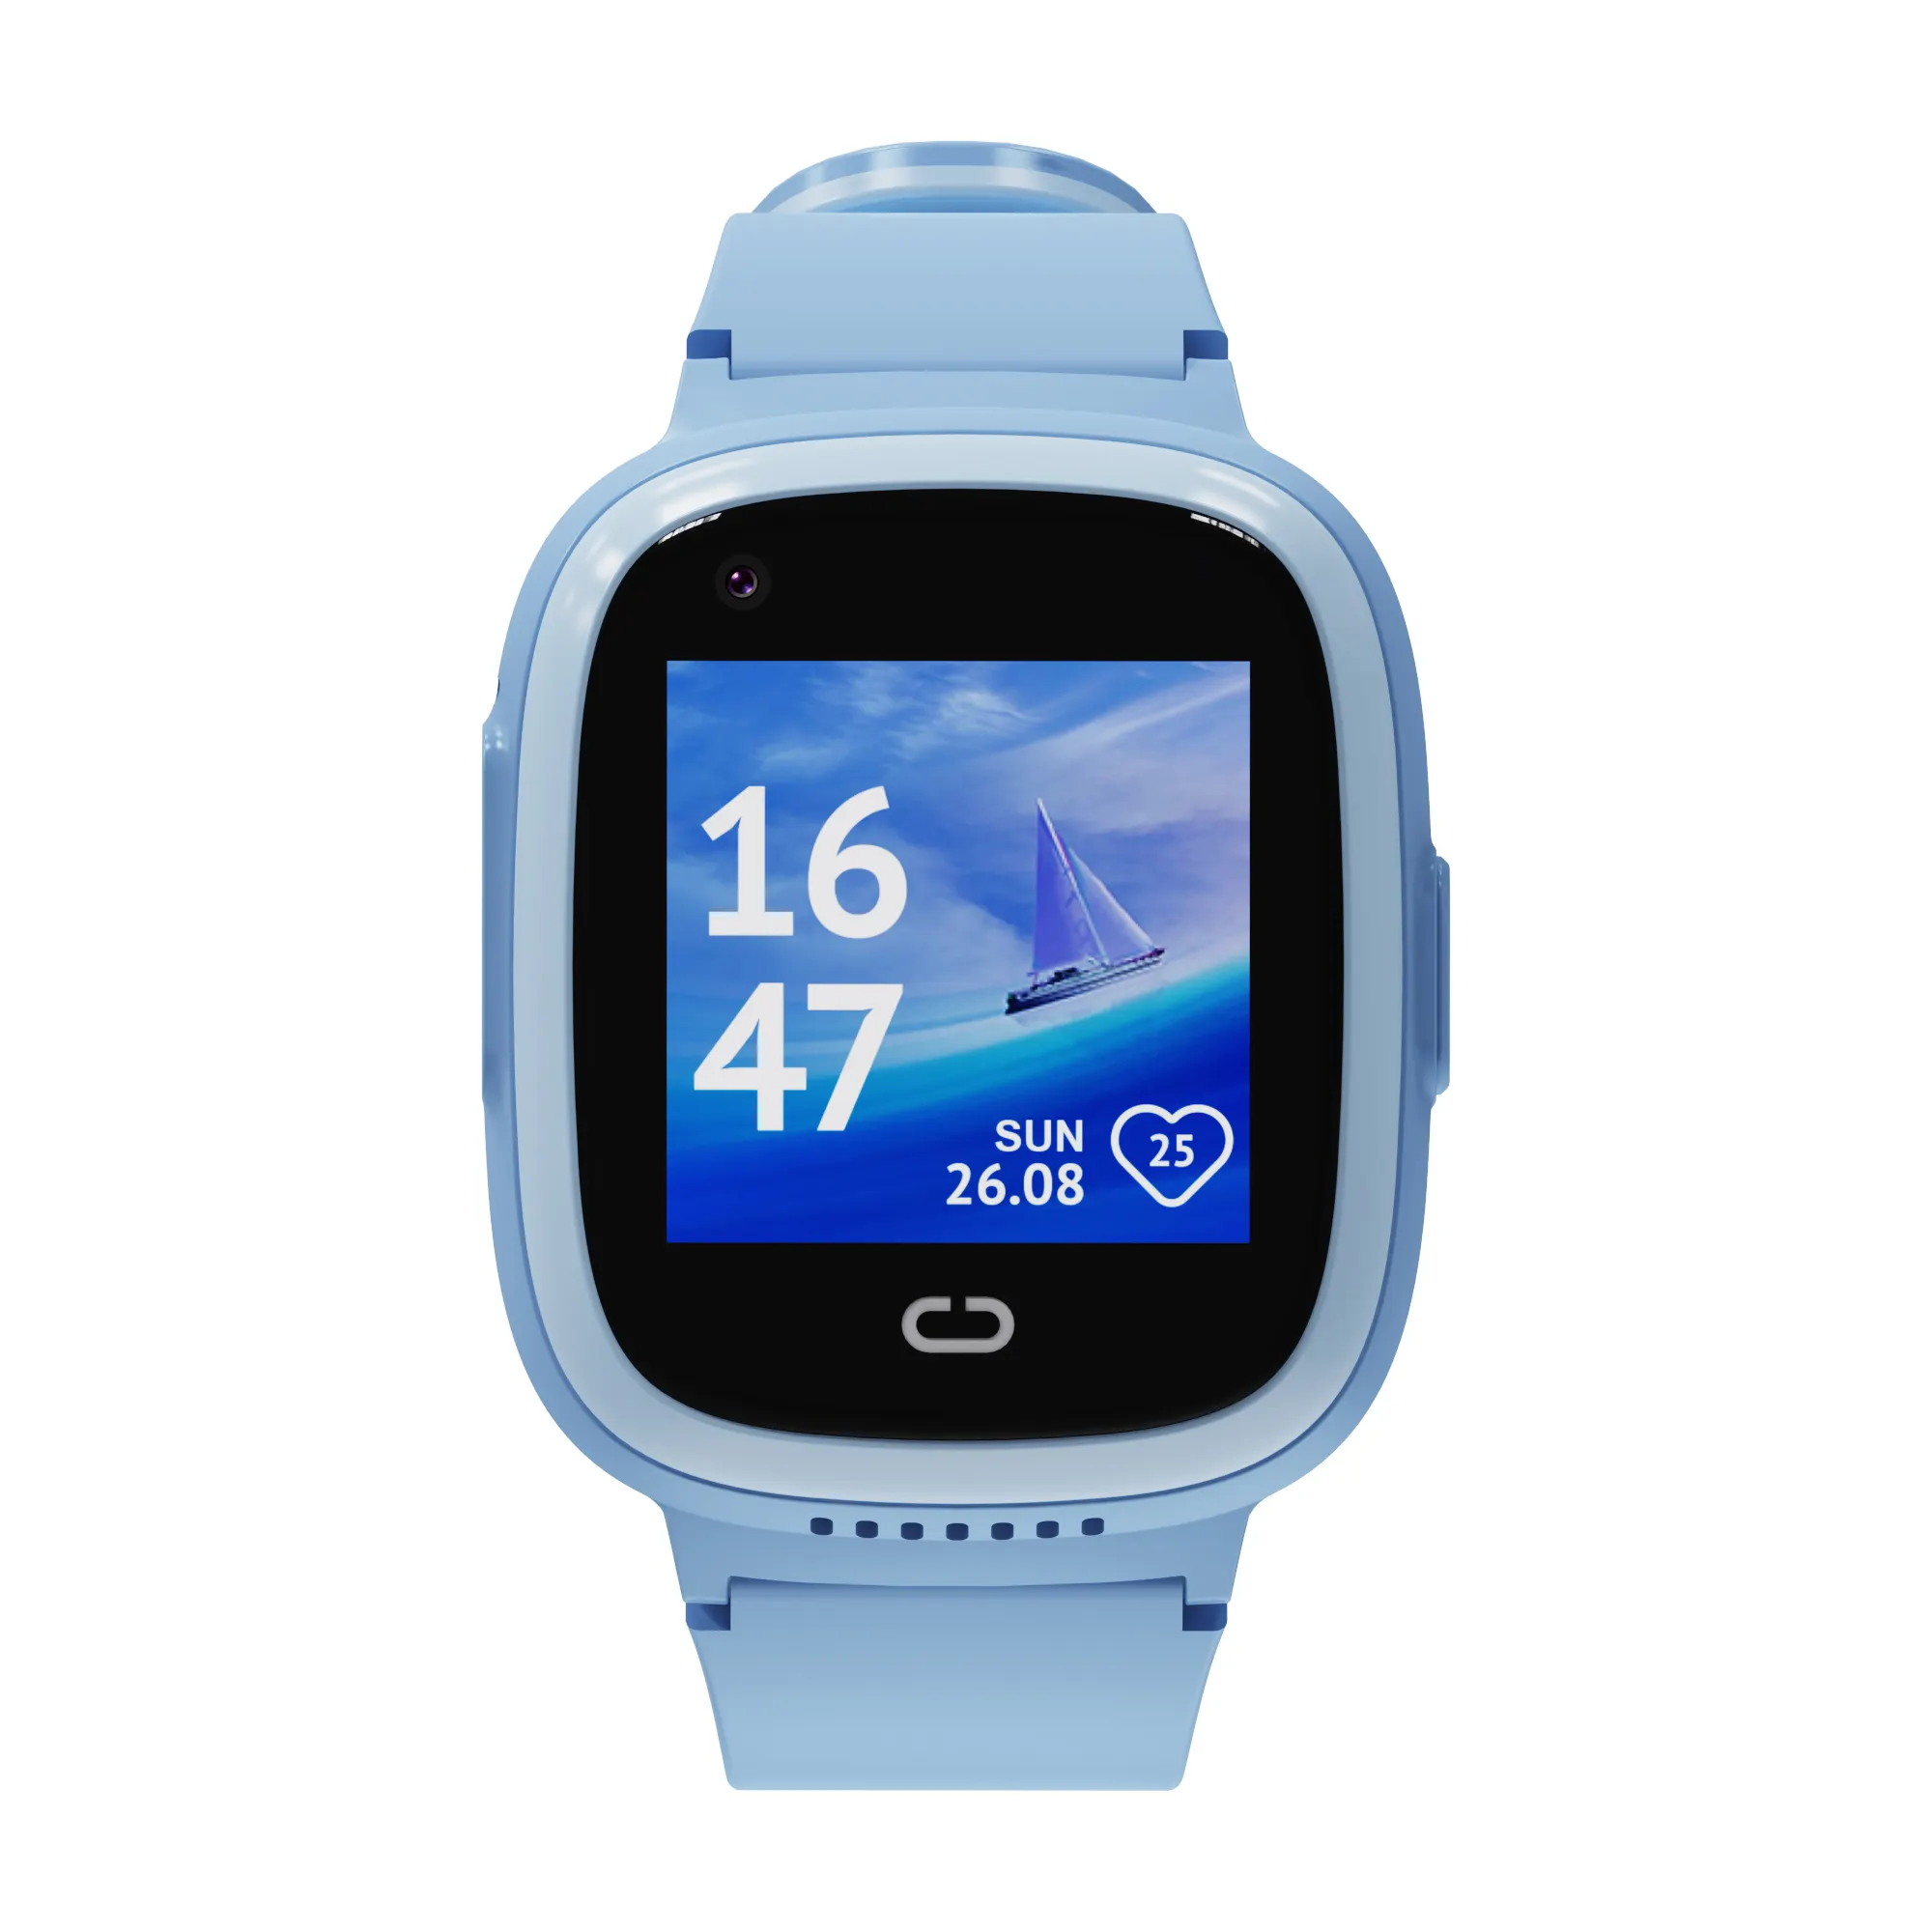 2023 all'ingrosso telefoni per orologi cellulari con fotocamera videochiamata Wifi Touch Screen Reloj Smartwatch Smartwatch sim card orologio per telefono